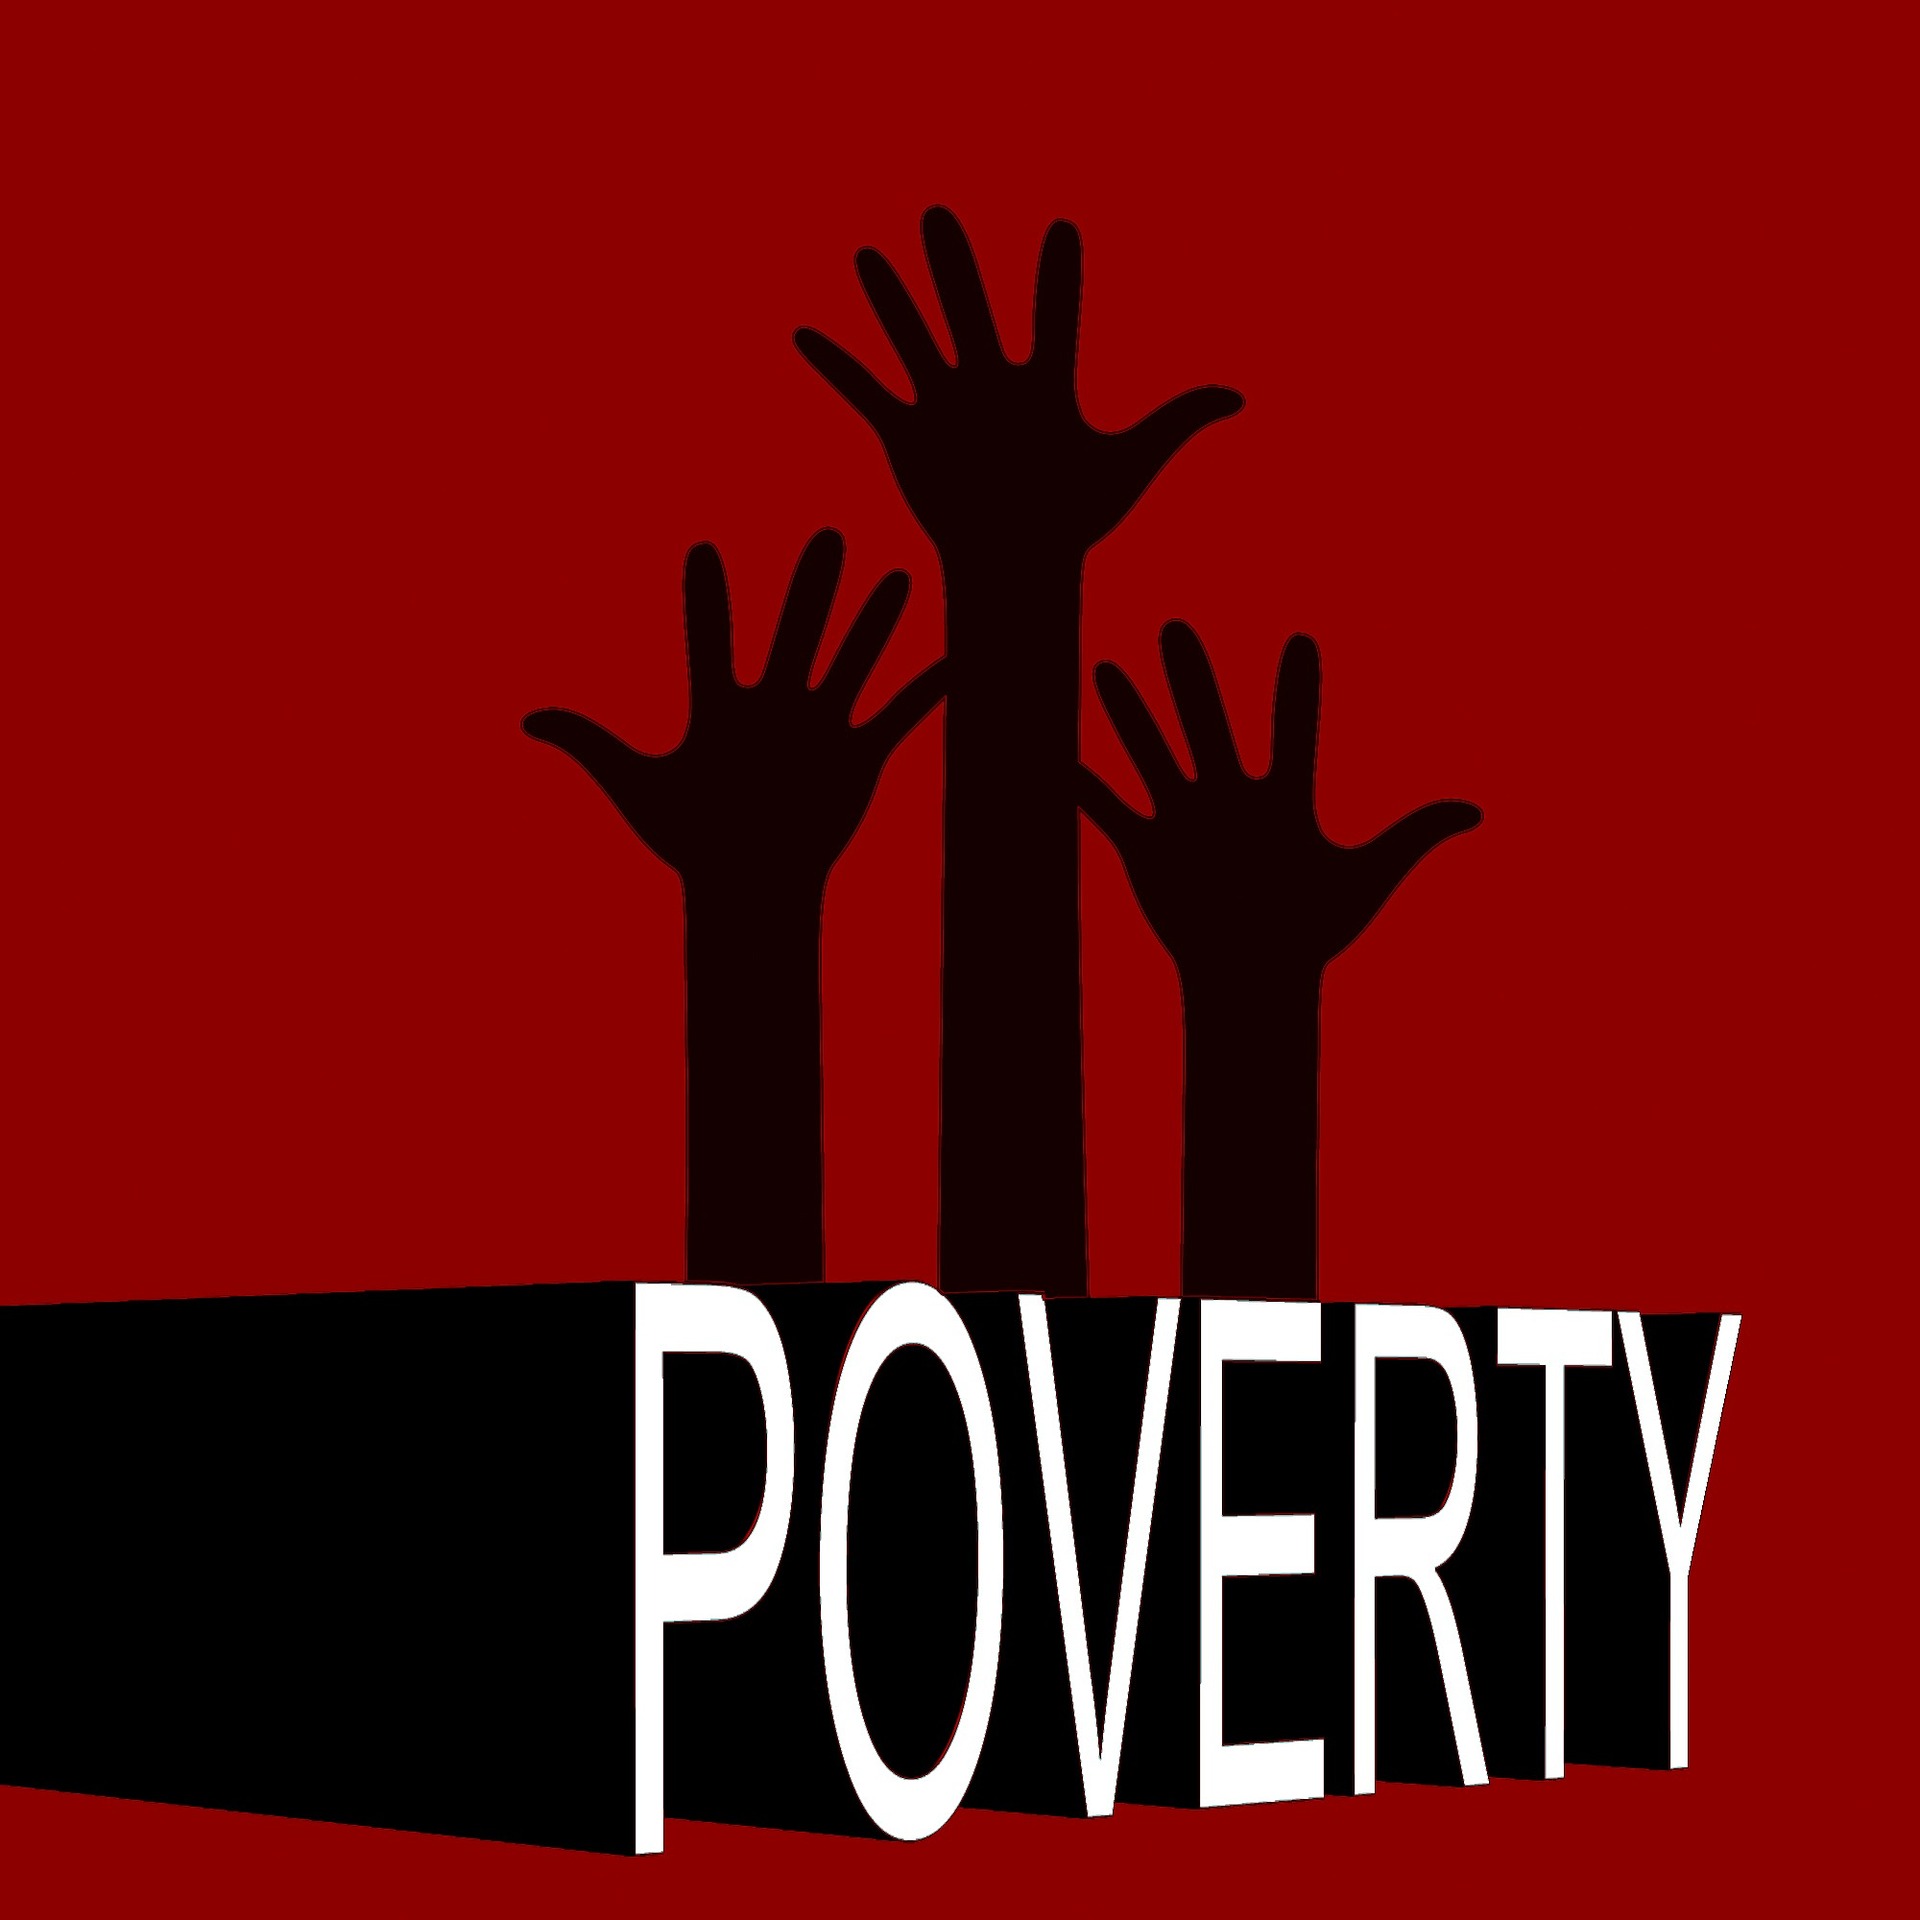 La pauvreté. Image Gerd Altmann de Pixabay